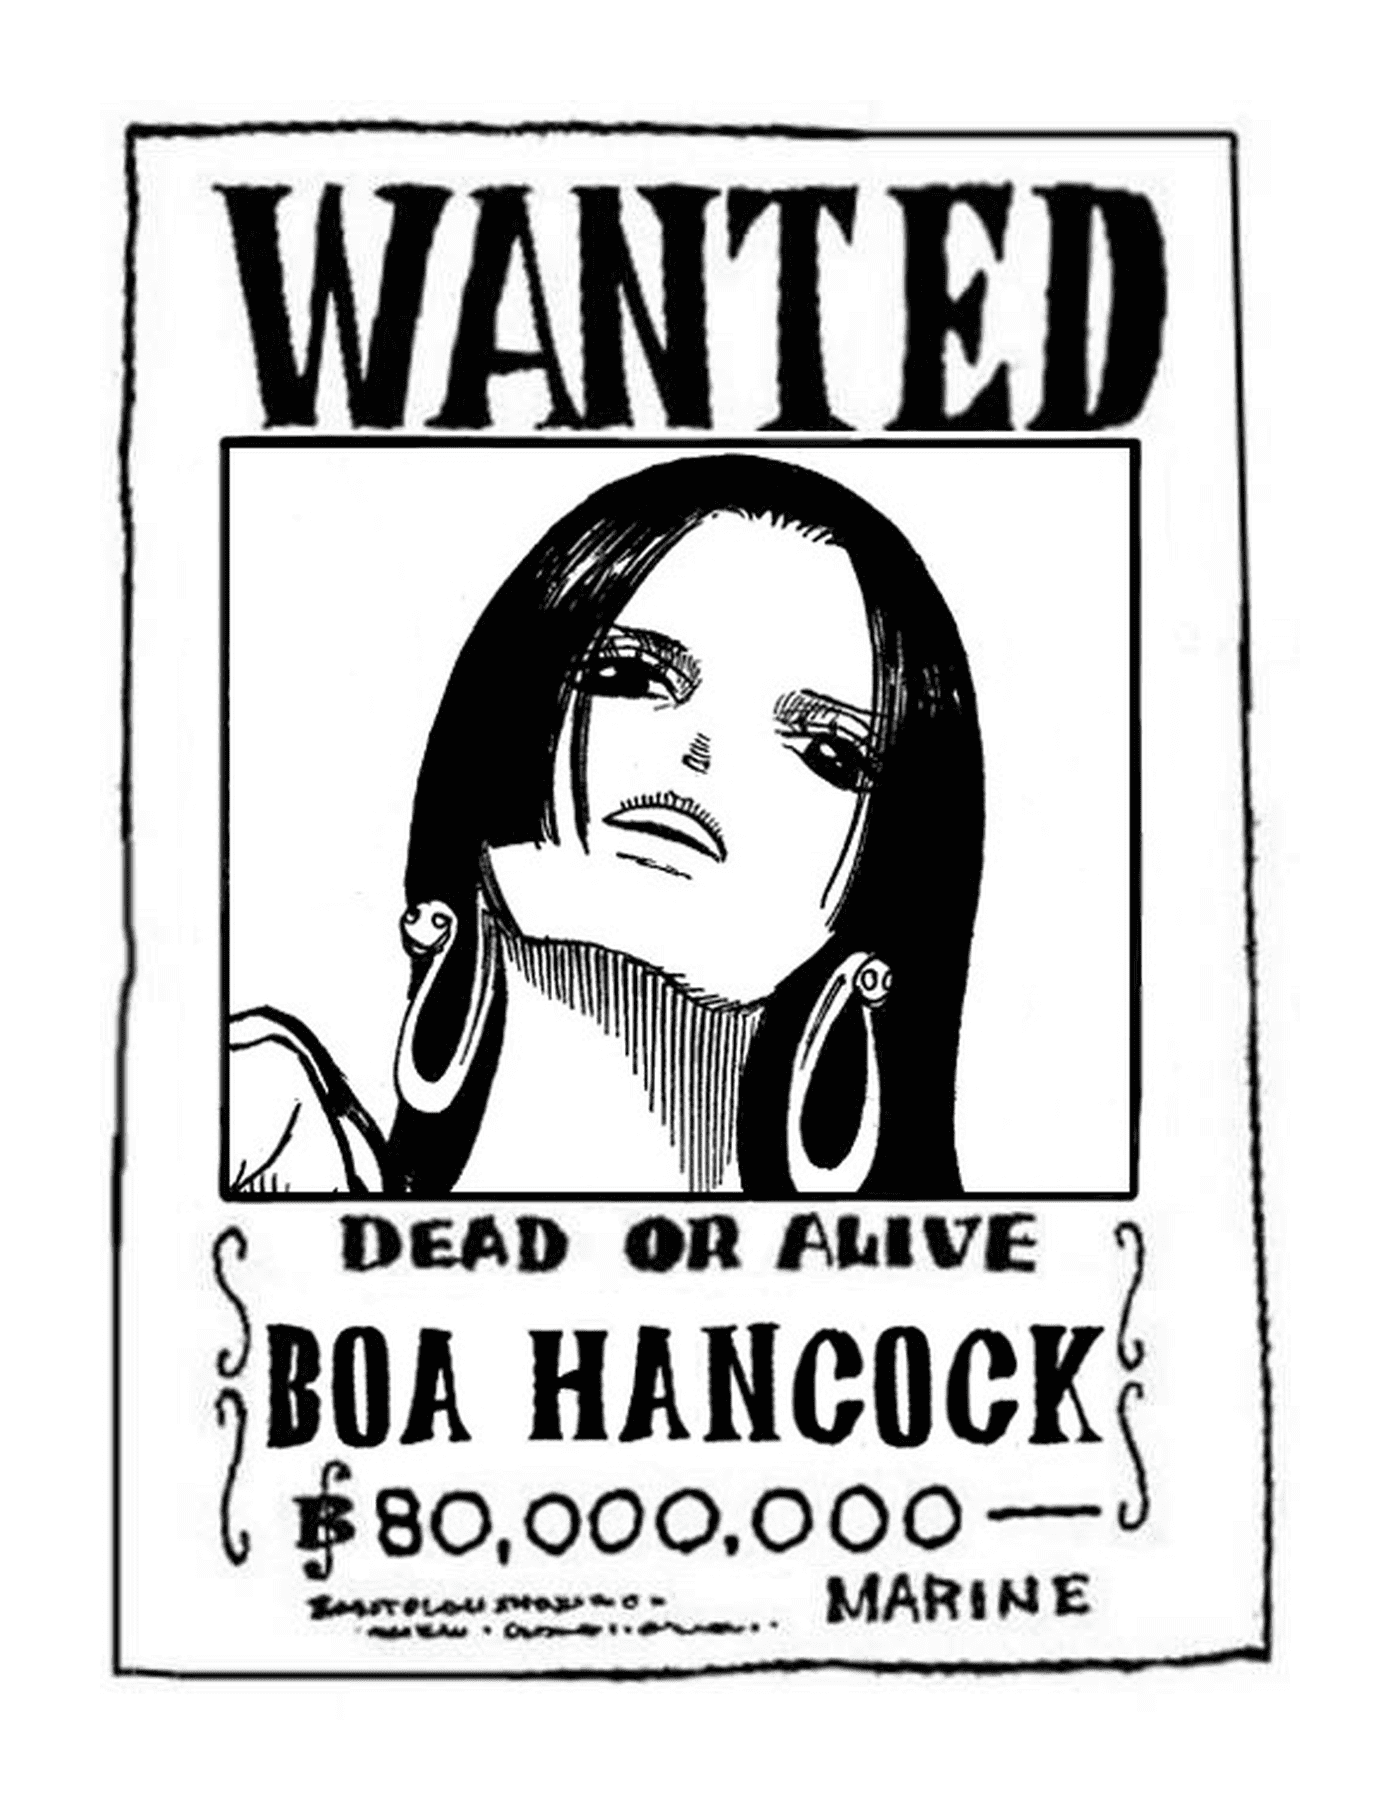  Gesucht Boa Hancock, tot oder lebendig 